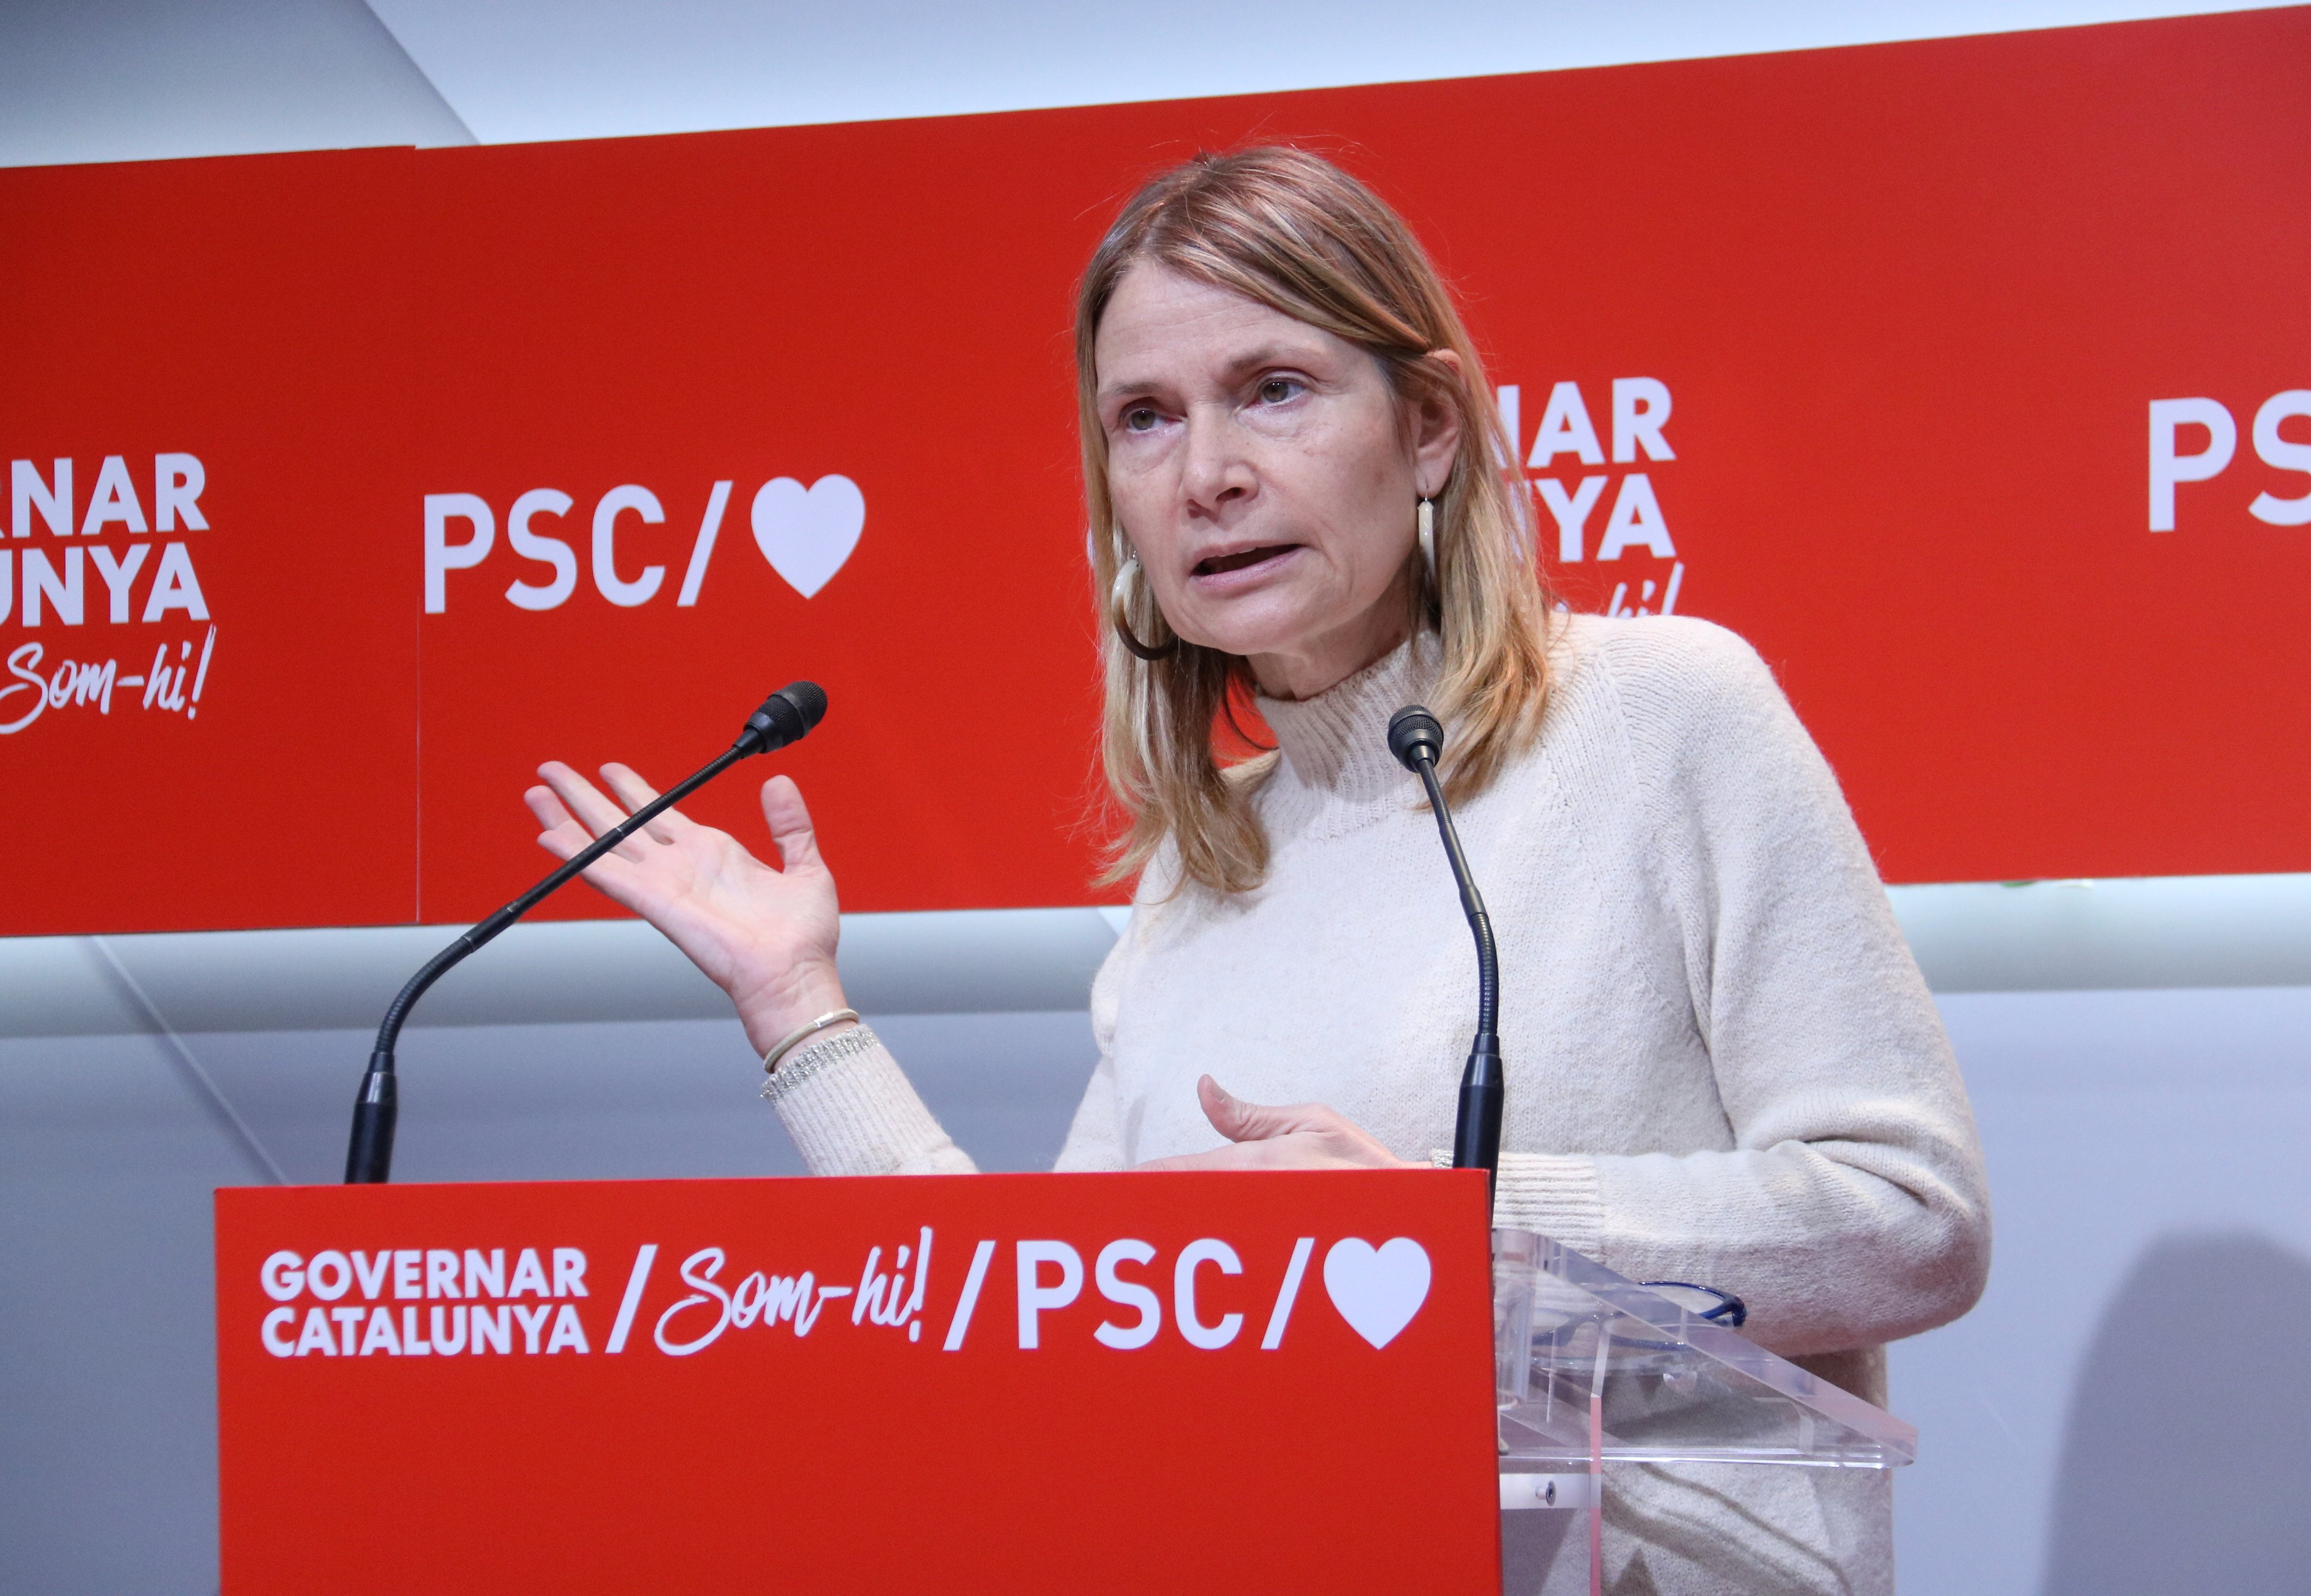 El PSC equipara el espionaje a Sánchez y el CatalanGate: "Son igual de graves"